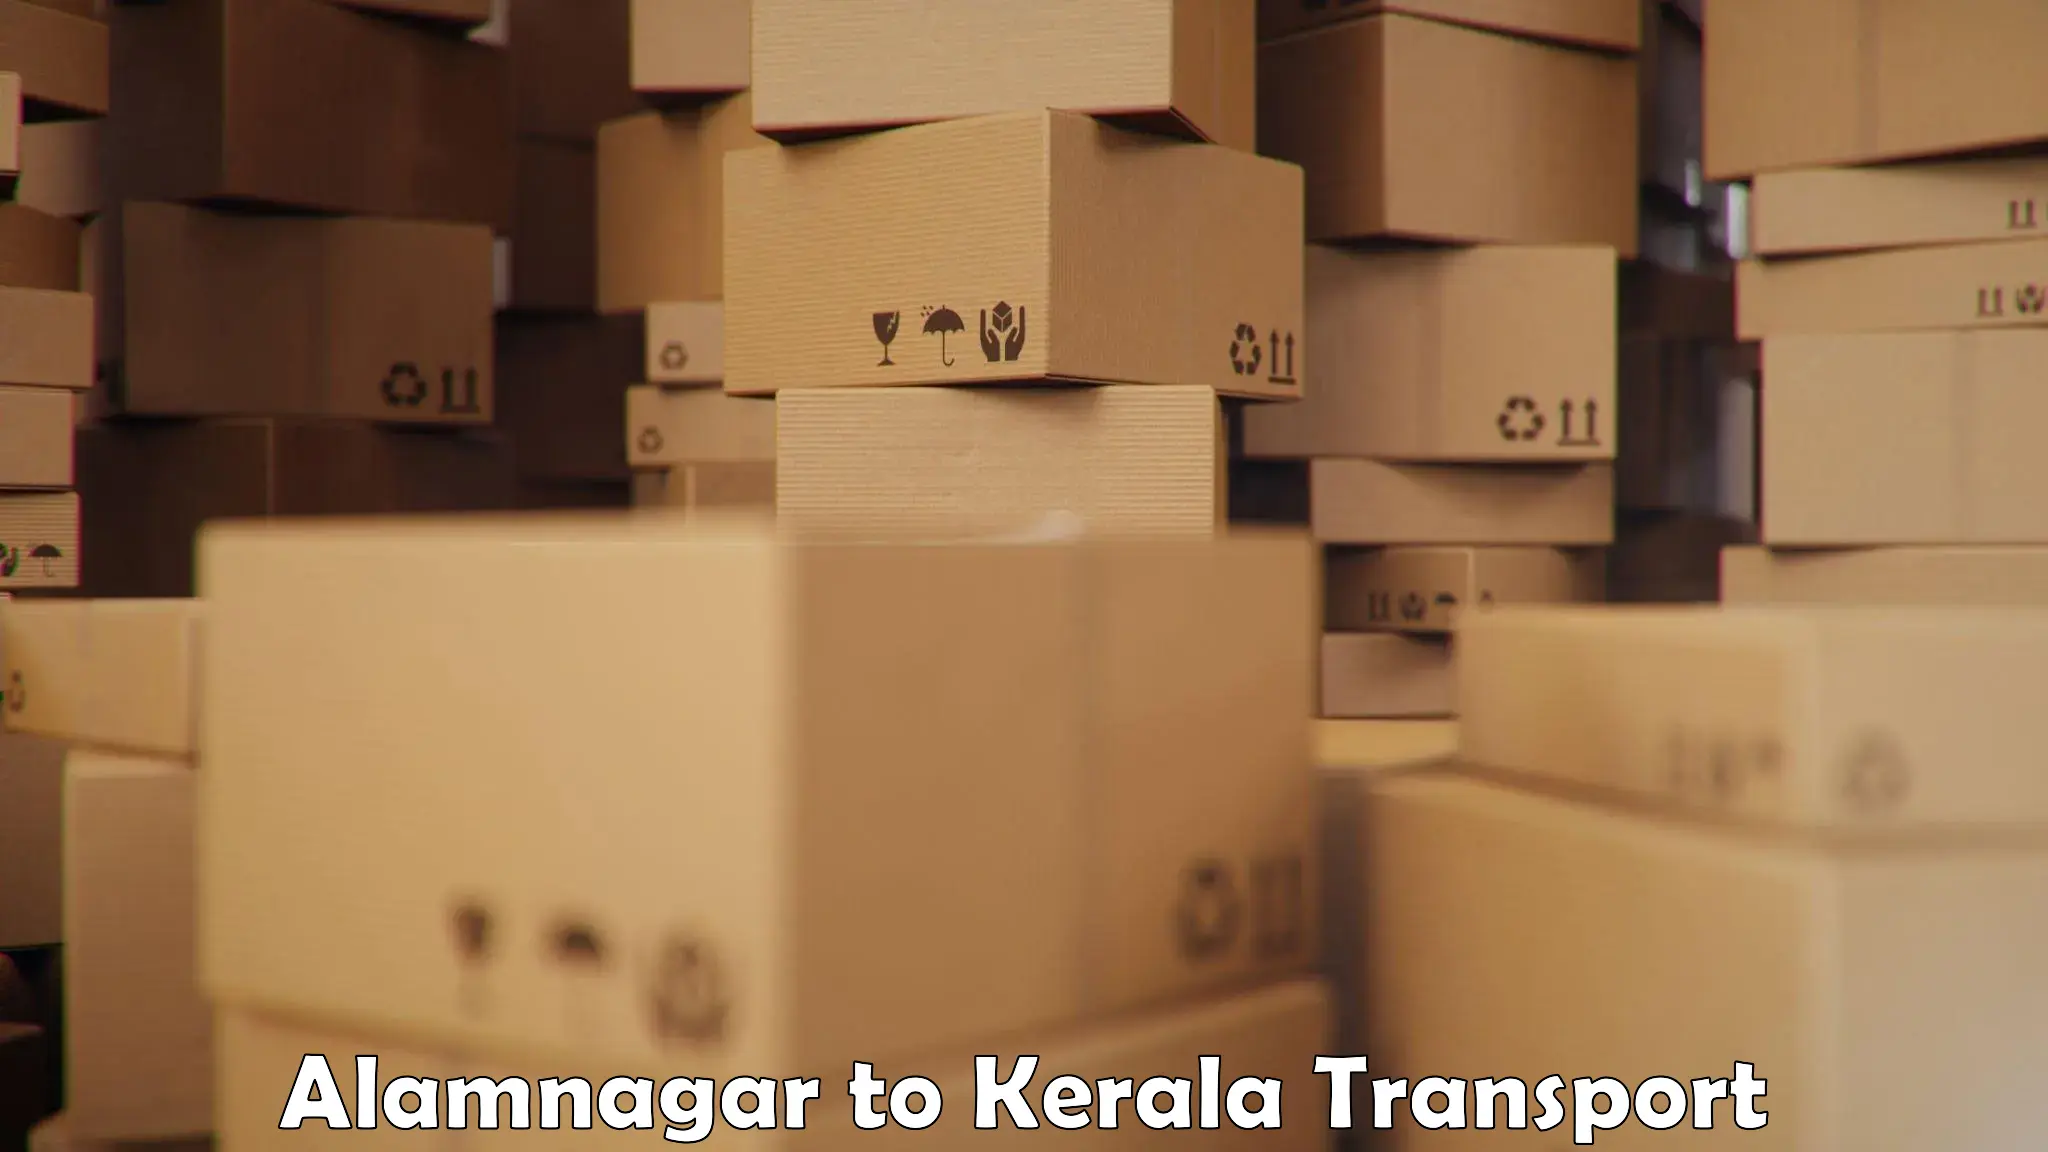 Container transportation services Alamnagar to Shoranur